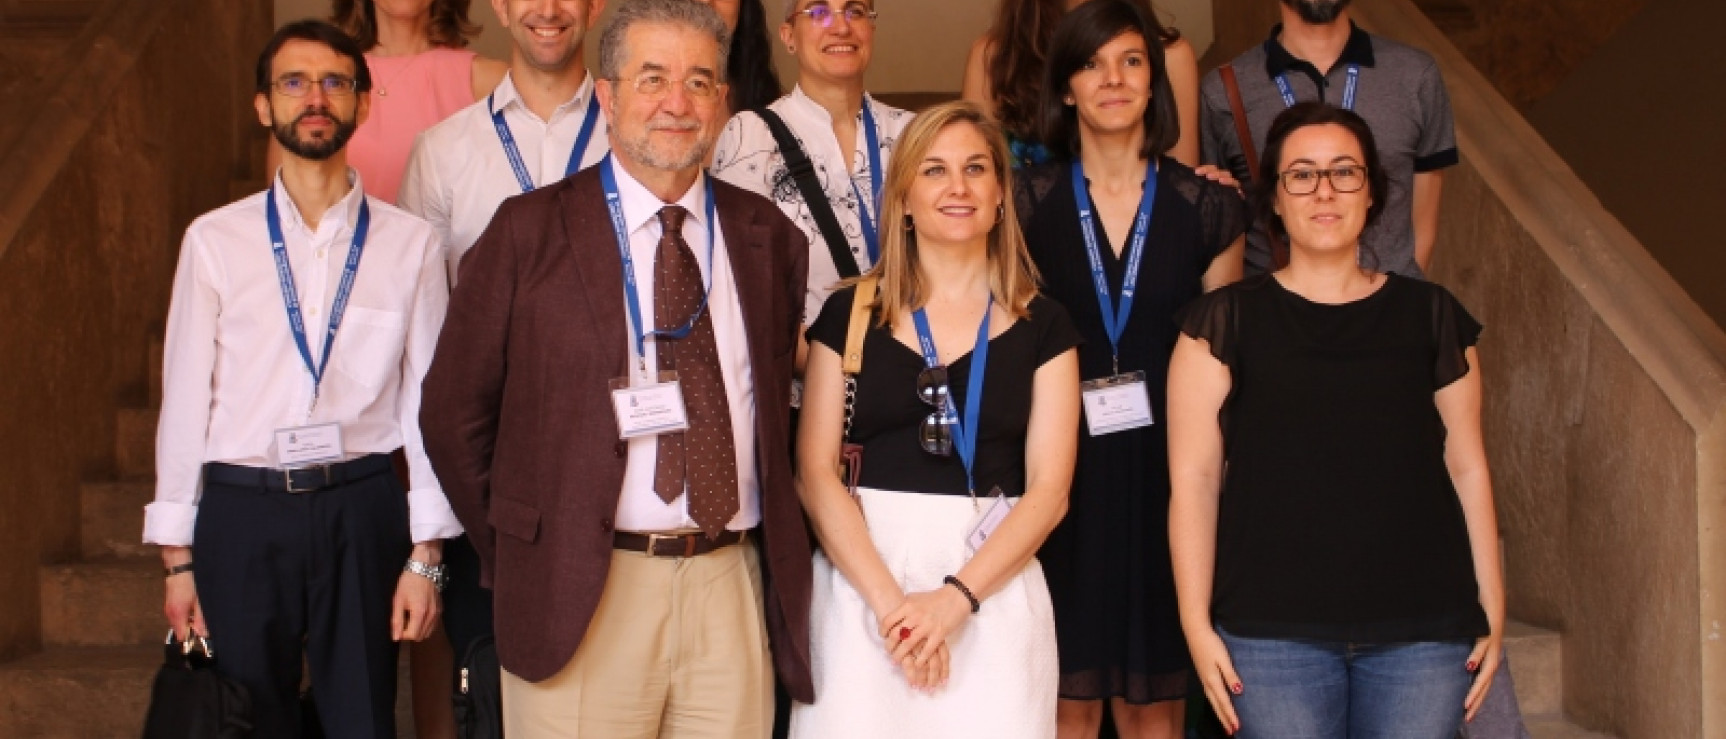 José Antonio Pascual, director del NDHE, junto con el equipo de lexicógrafos del diccionario.